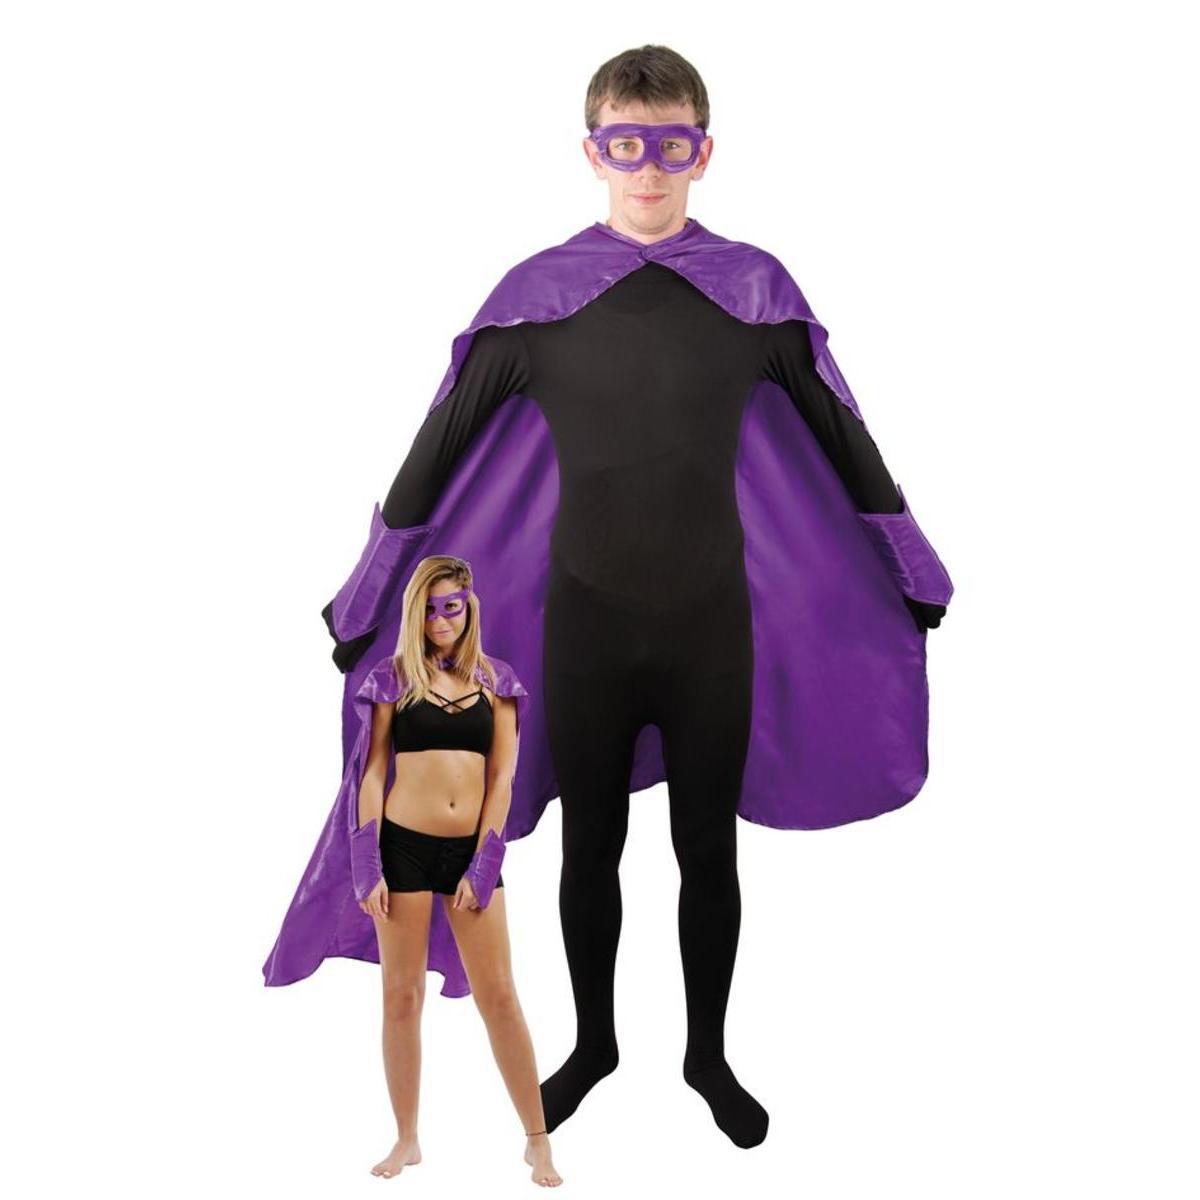 Costume de super-héros - Taille adulte unique - L 36 x l 35 cm - Violet - PTIT CLOWN